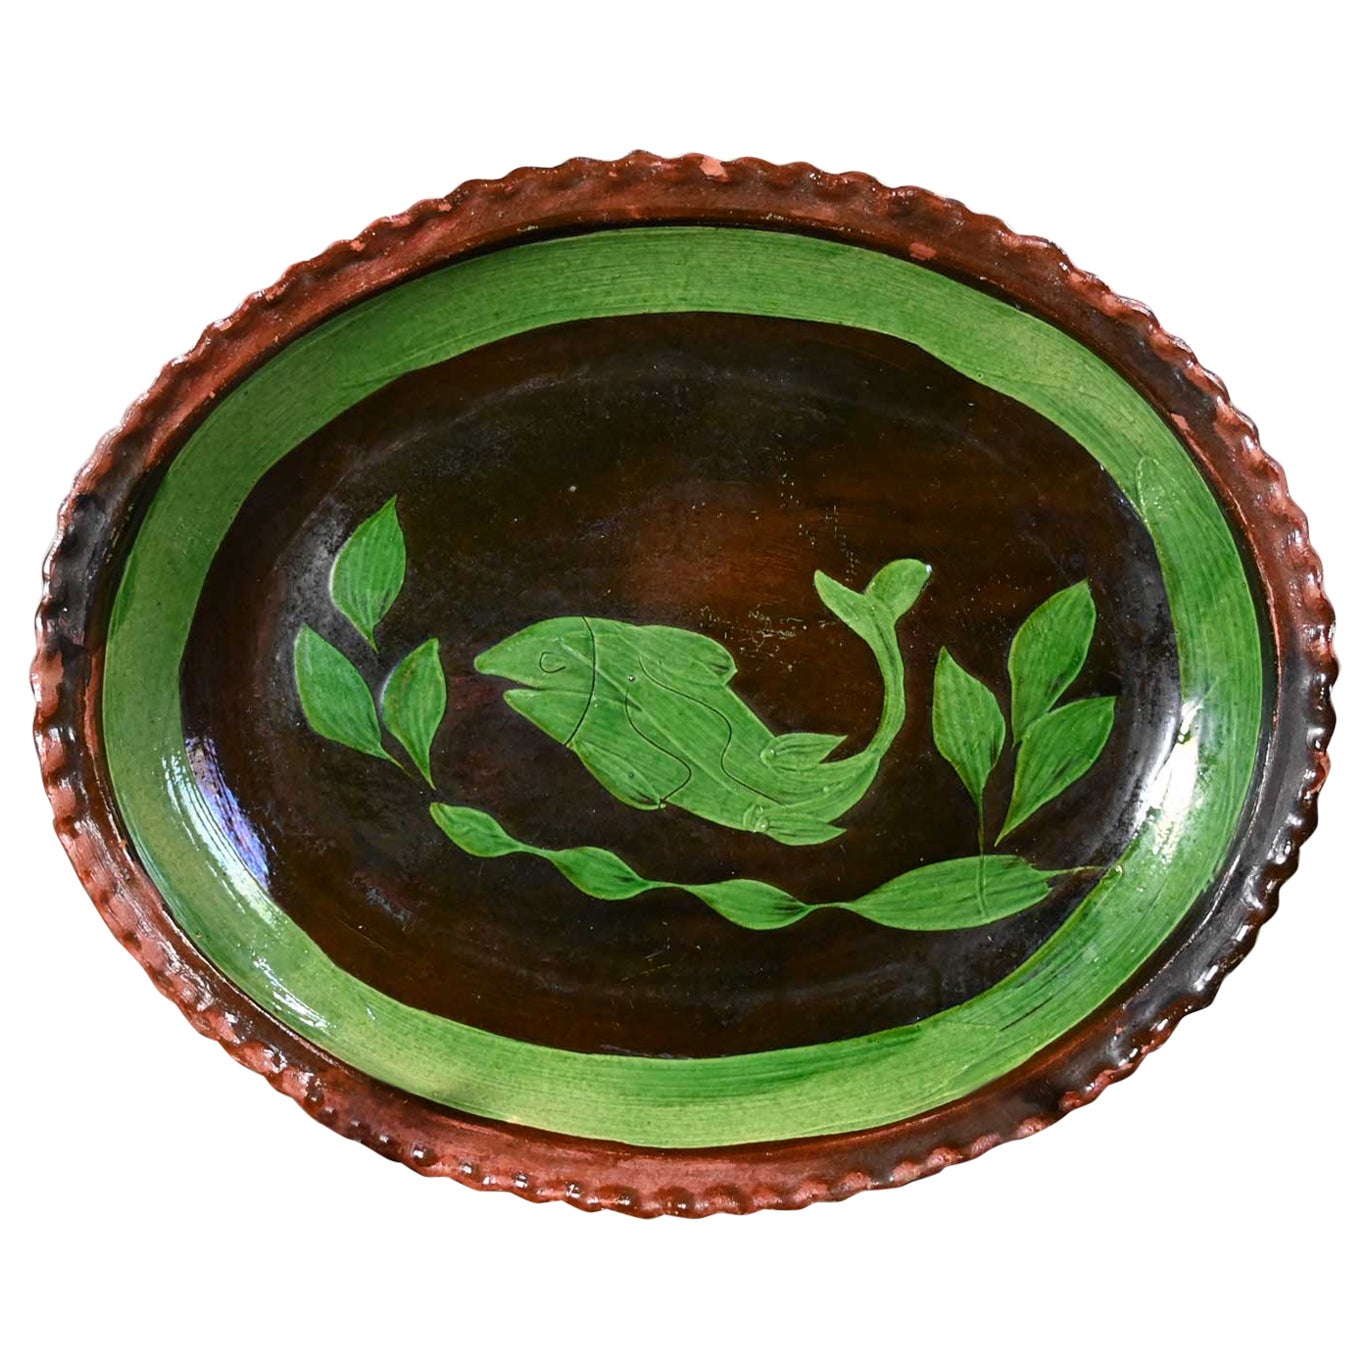 Plat mexicain Patamban peint à la main en forme de poisson - Art populaire - Vert et marron émaillé